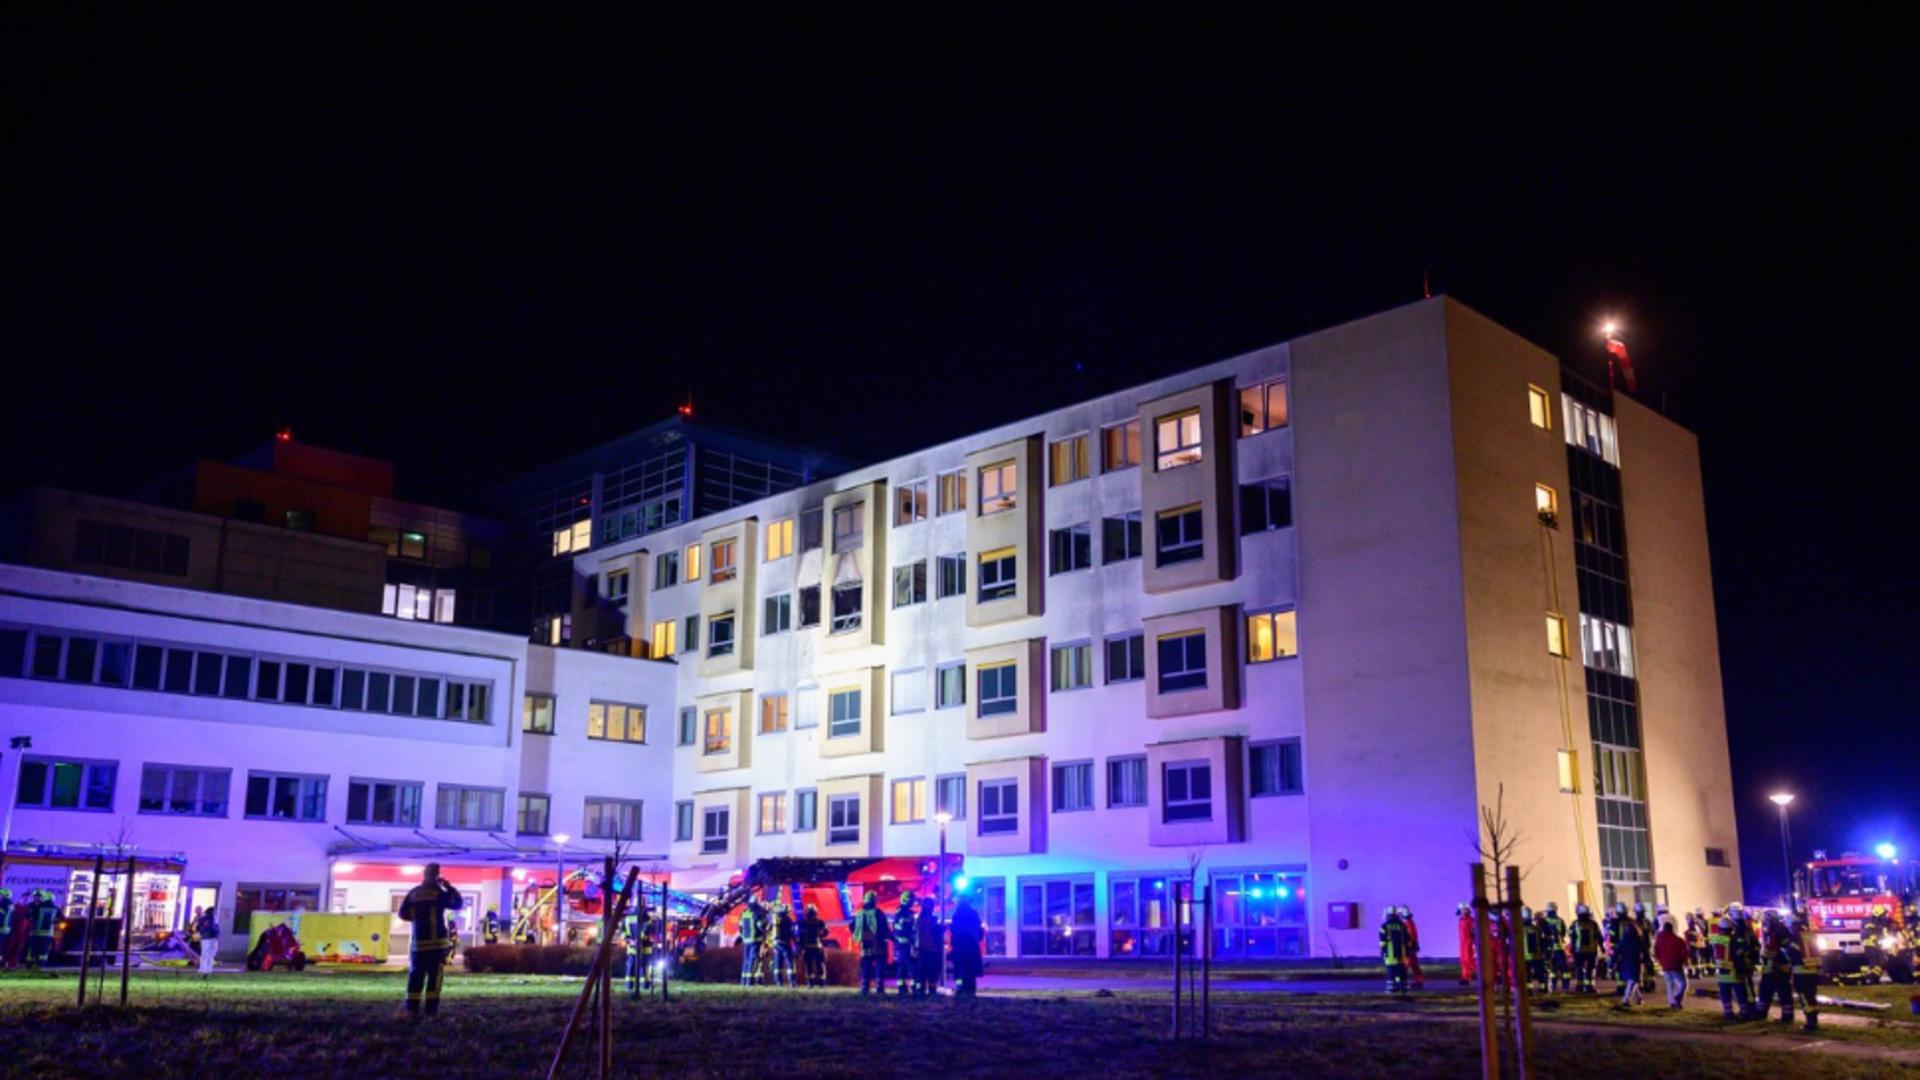 Patru morți în urma unui incendiu izbucnit la un spital din Germania. Imagini de la locul dezastrului – FOTO